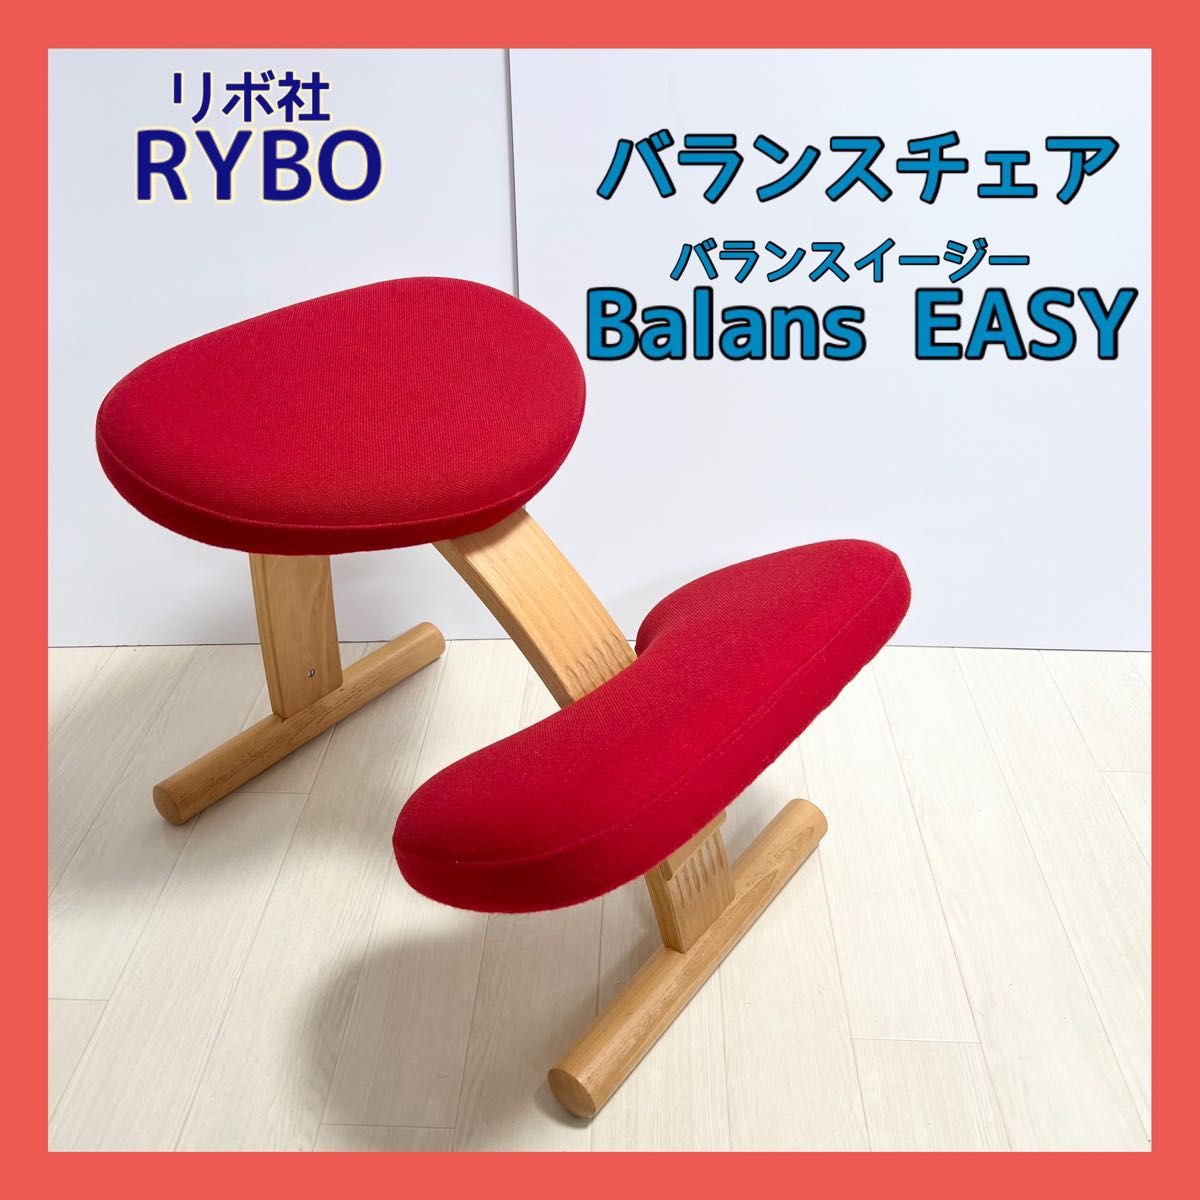 Rybo リボ社 balance easy バランスチェアイージー